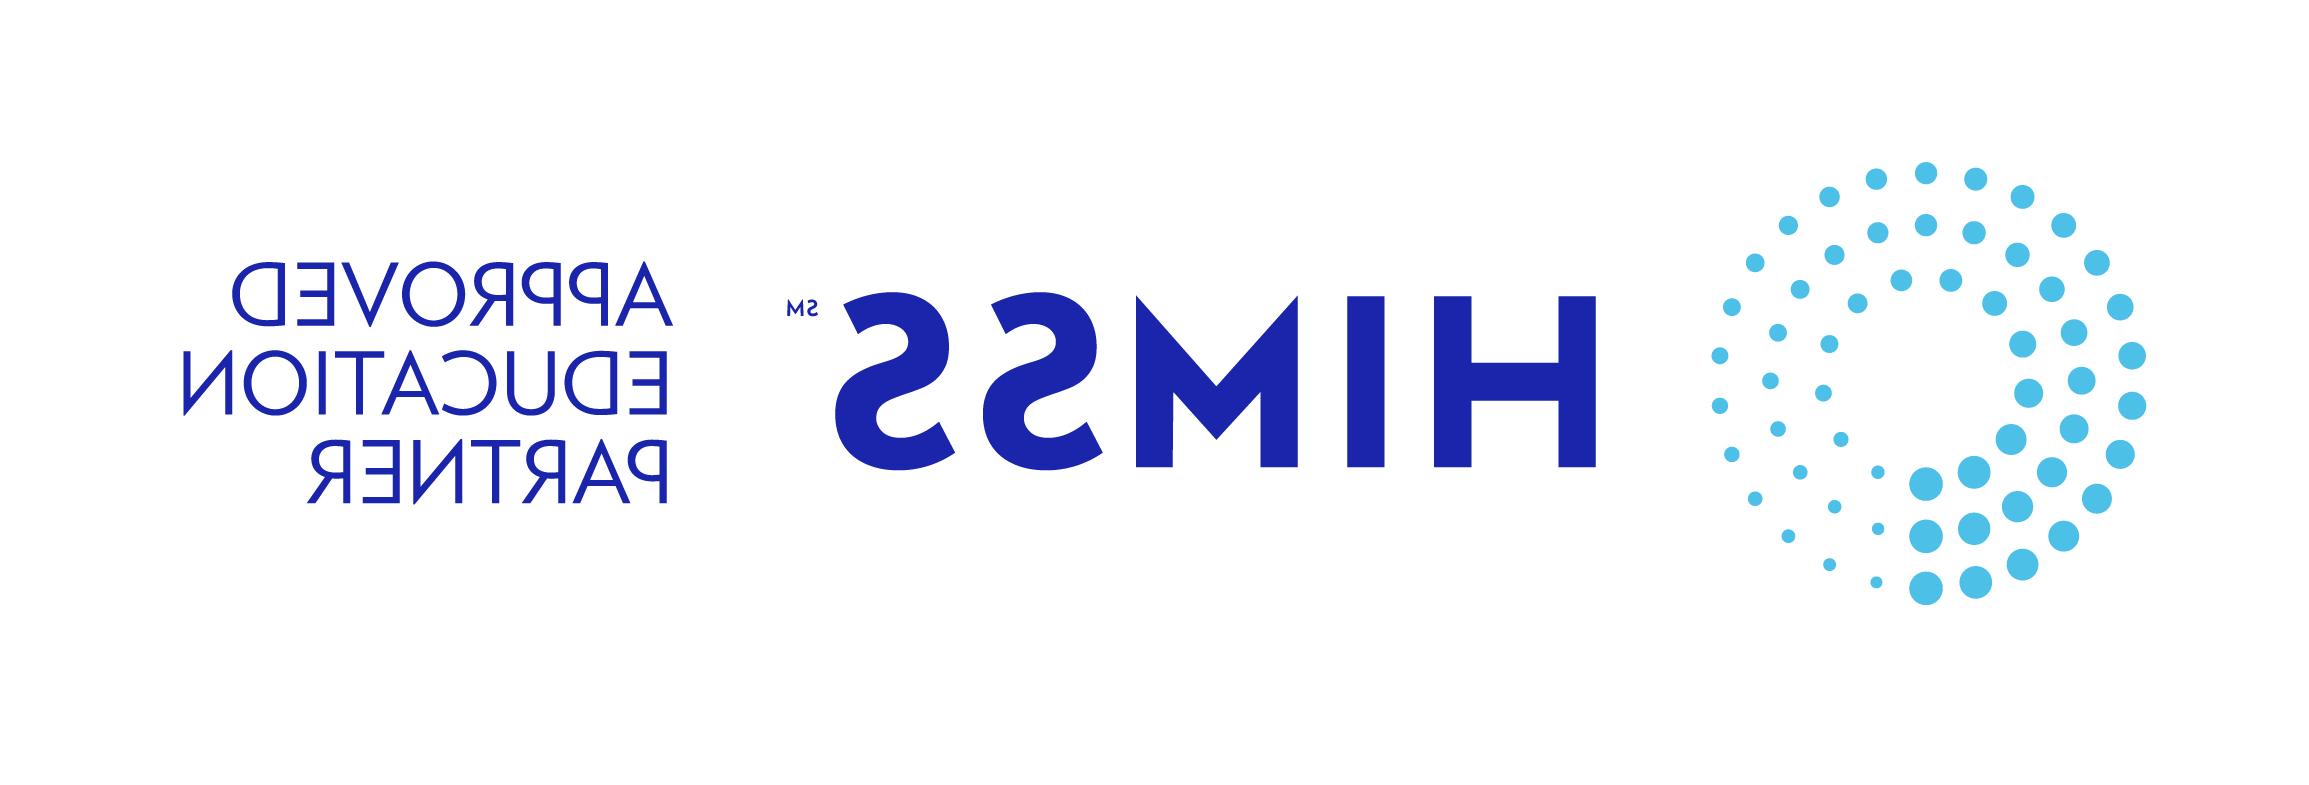 logo of HIMSS